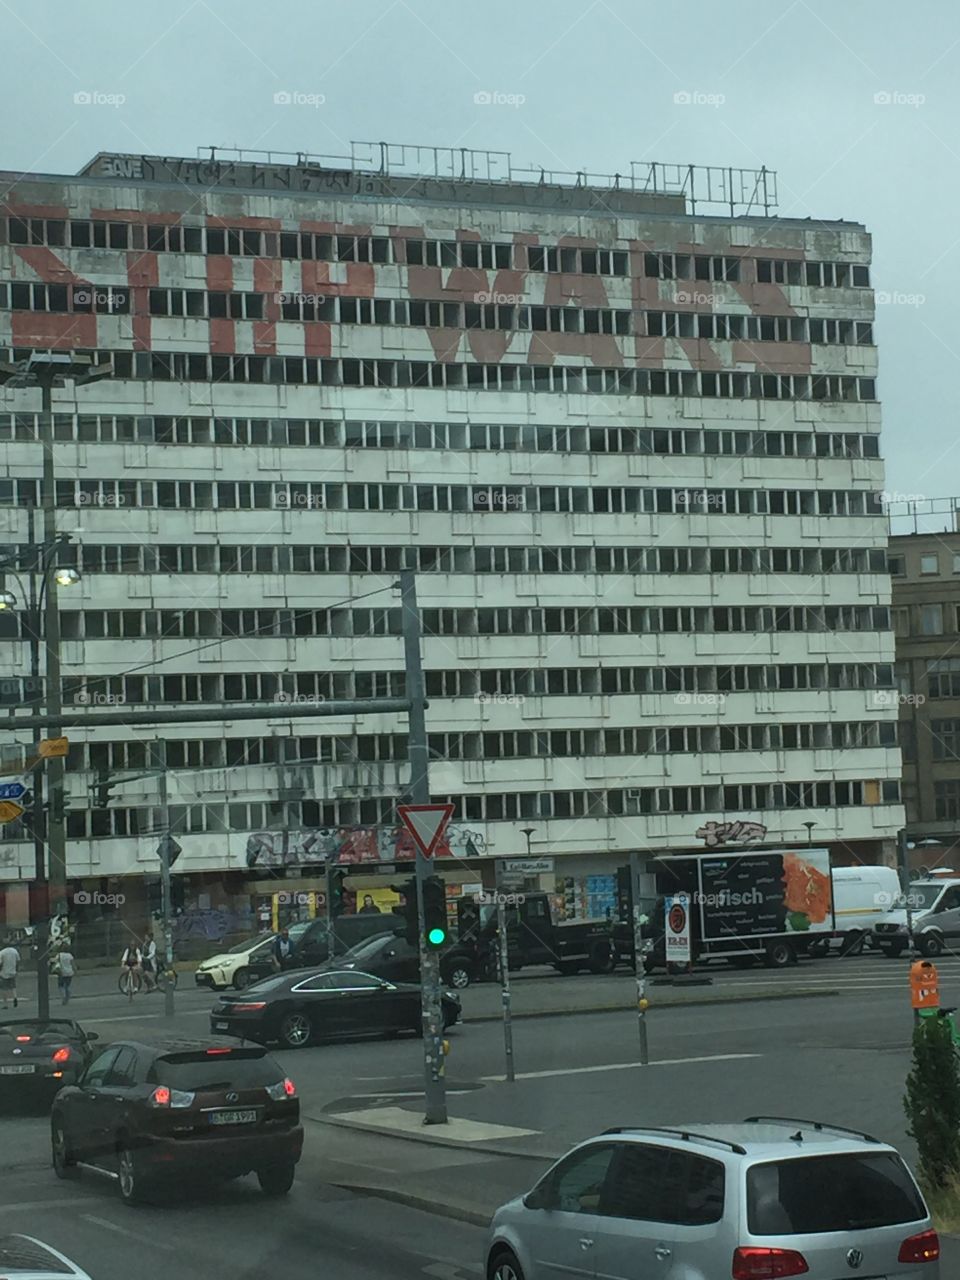 Berlin building